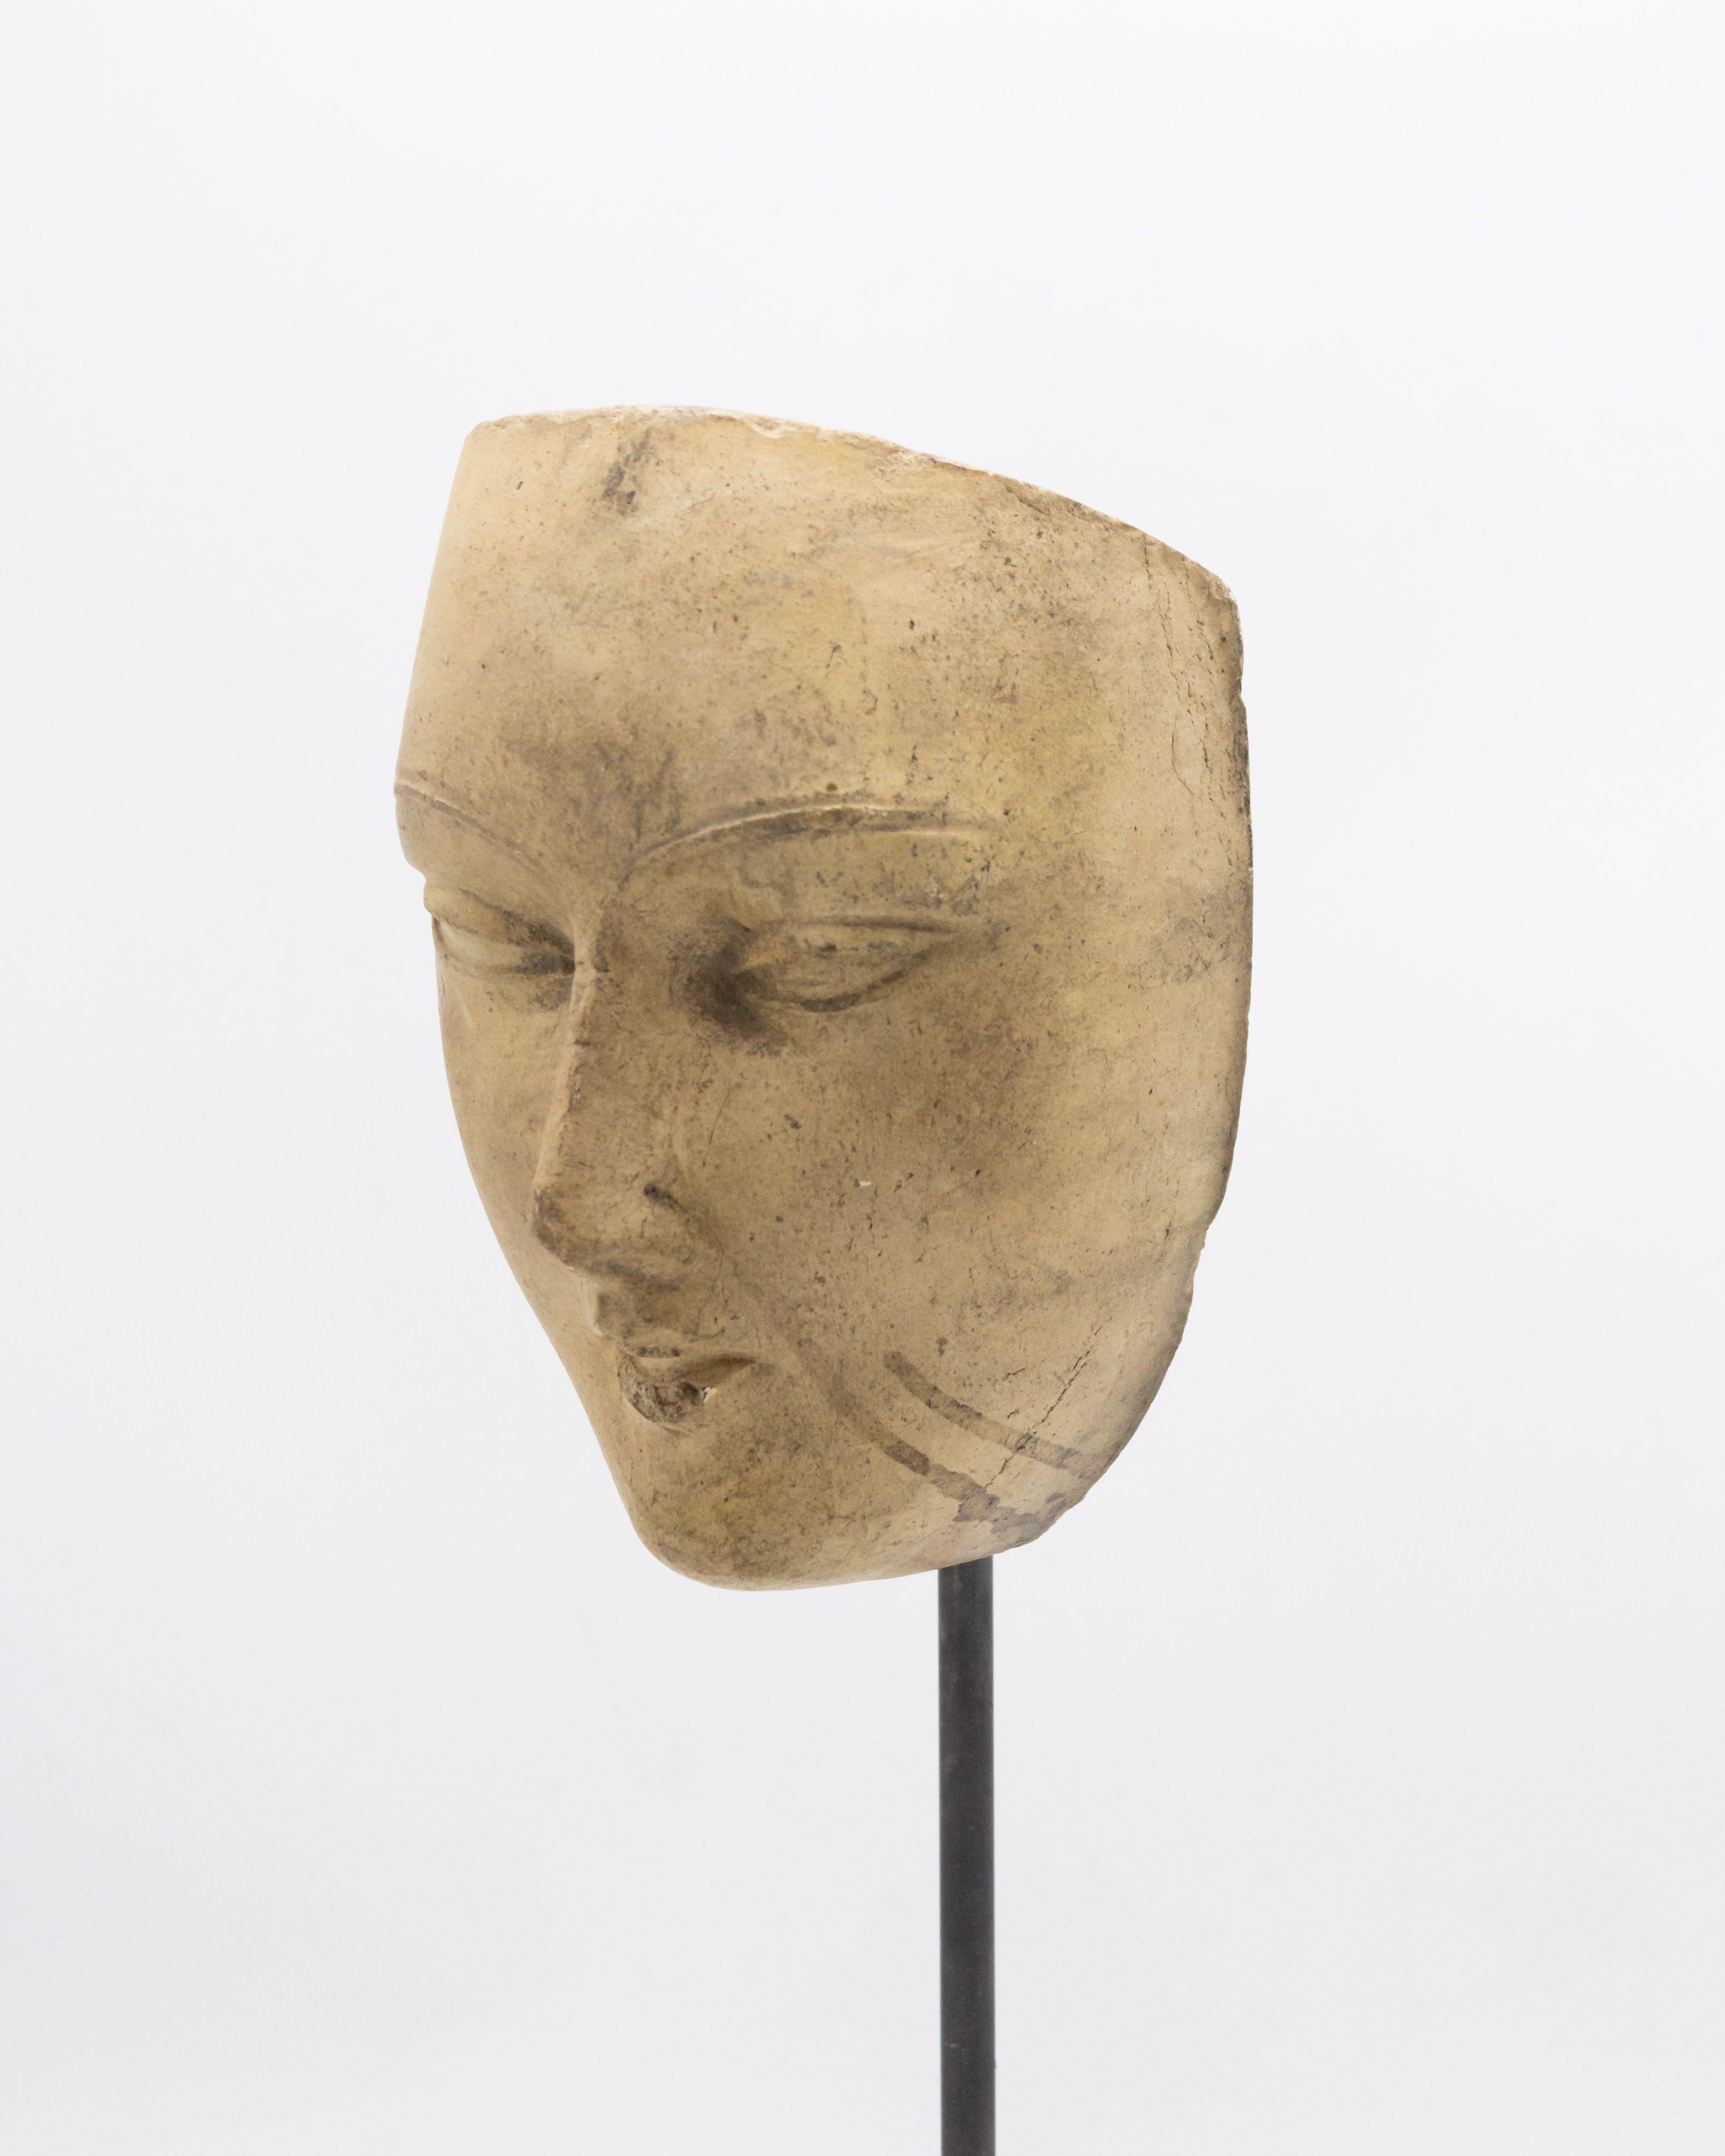 Kontinentaldeutsche (spätes 19. Jh.) Terrakotta-Maskenformbüste eines heiteren Gesichts mit asiatischen Zügen auf einem quadratischen schwarzen Marmorsockel (Teil einer 39-teiligen Sammlung).
 